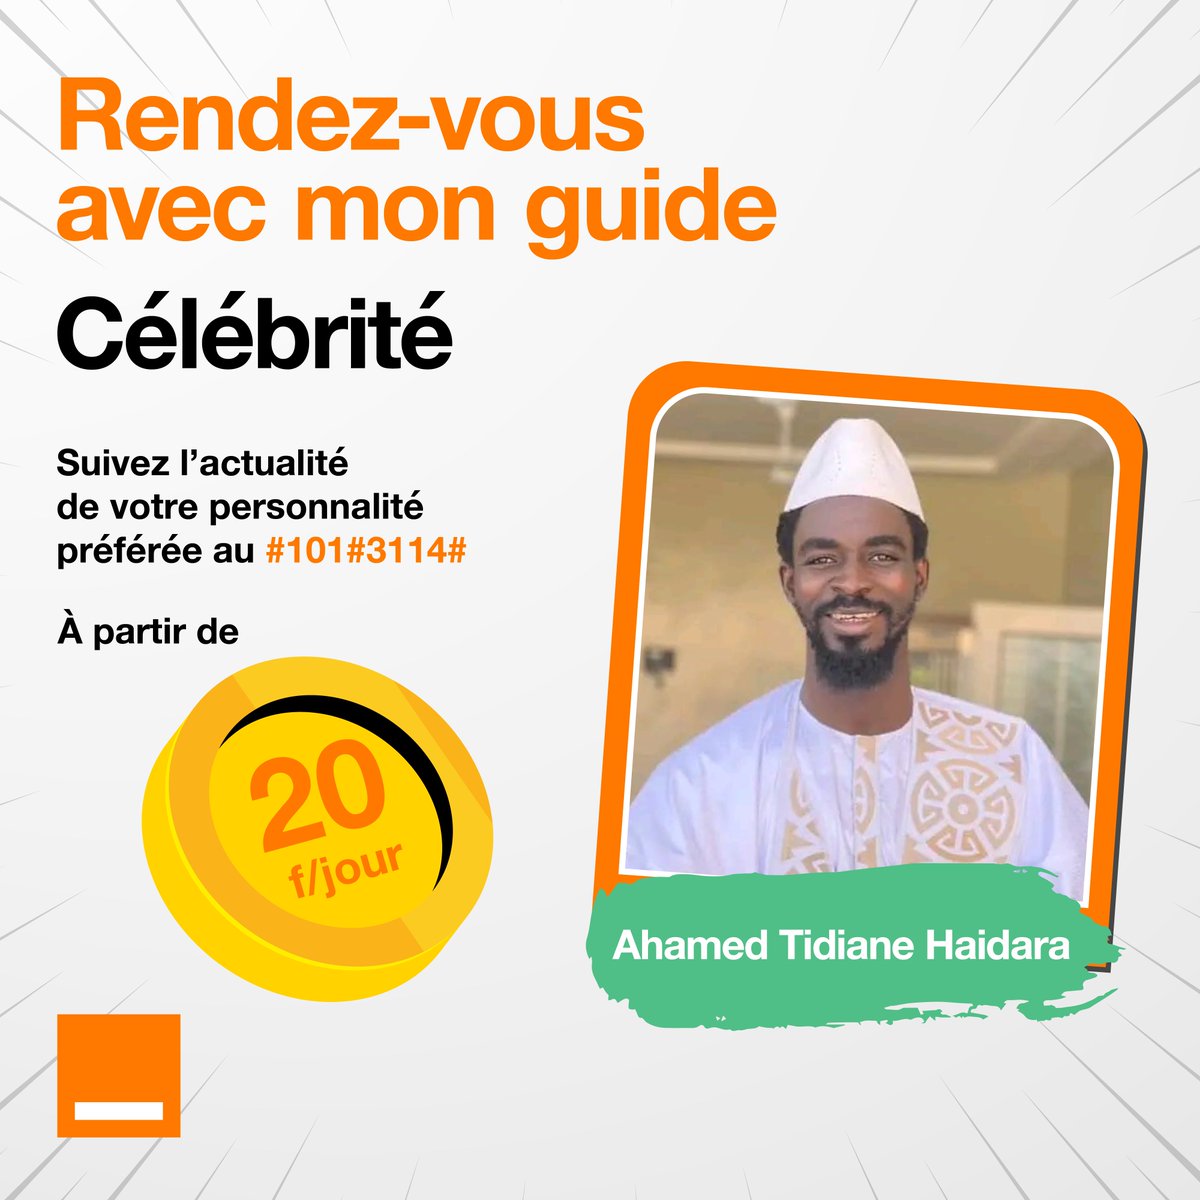 Découvrez Ahamed Tidiane Haidara sur #Celebrite. Pour seulement 20F/jour, restez connecté avec votre guide préféré en écoutant ses messages vocaux au 37900. Souscription au #101#3114#